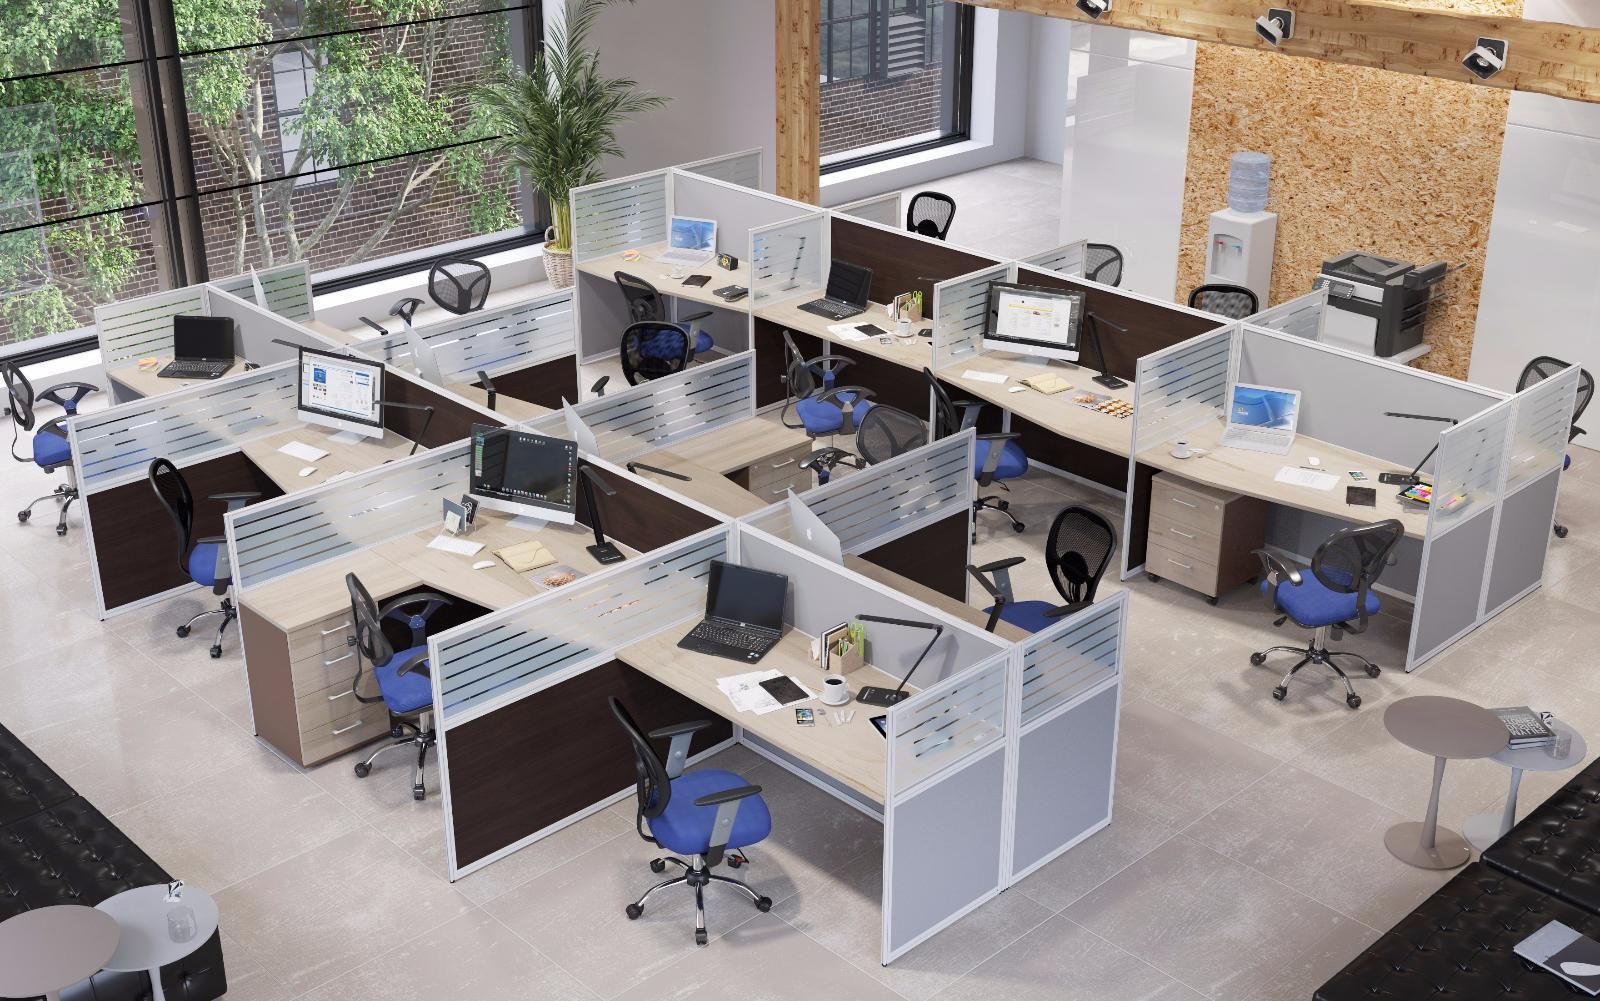 Бесшовная интеграция: максимальная совместимость офисной мебели для повышения производительности